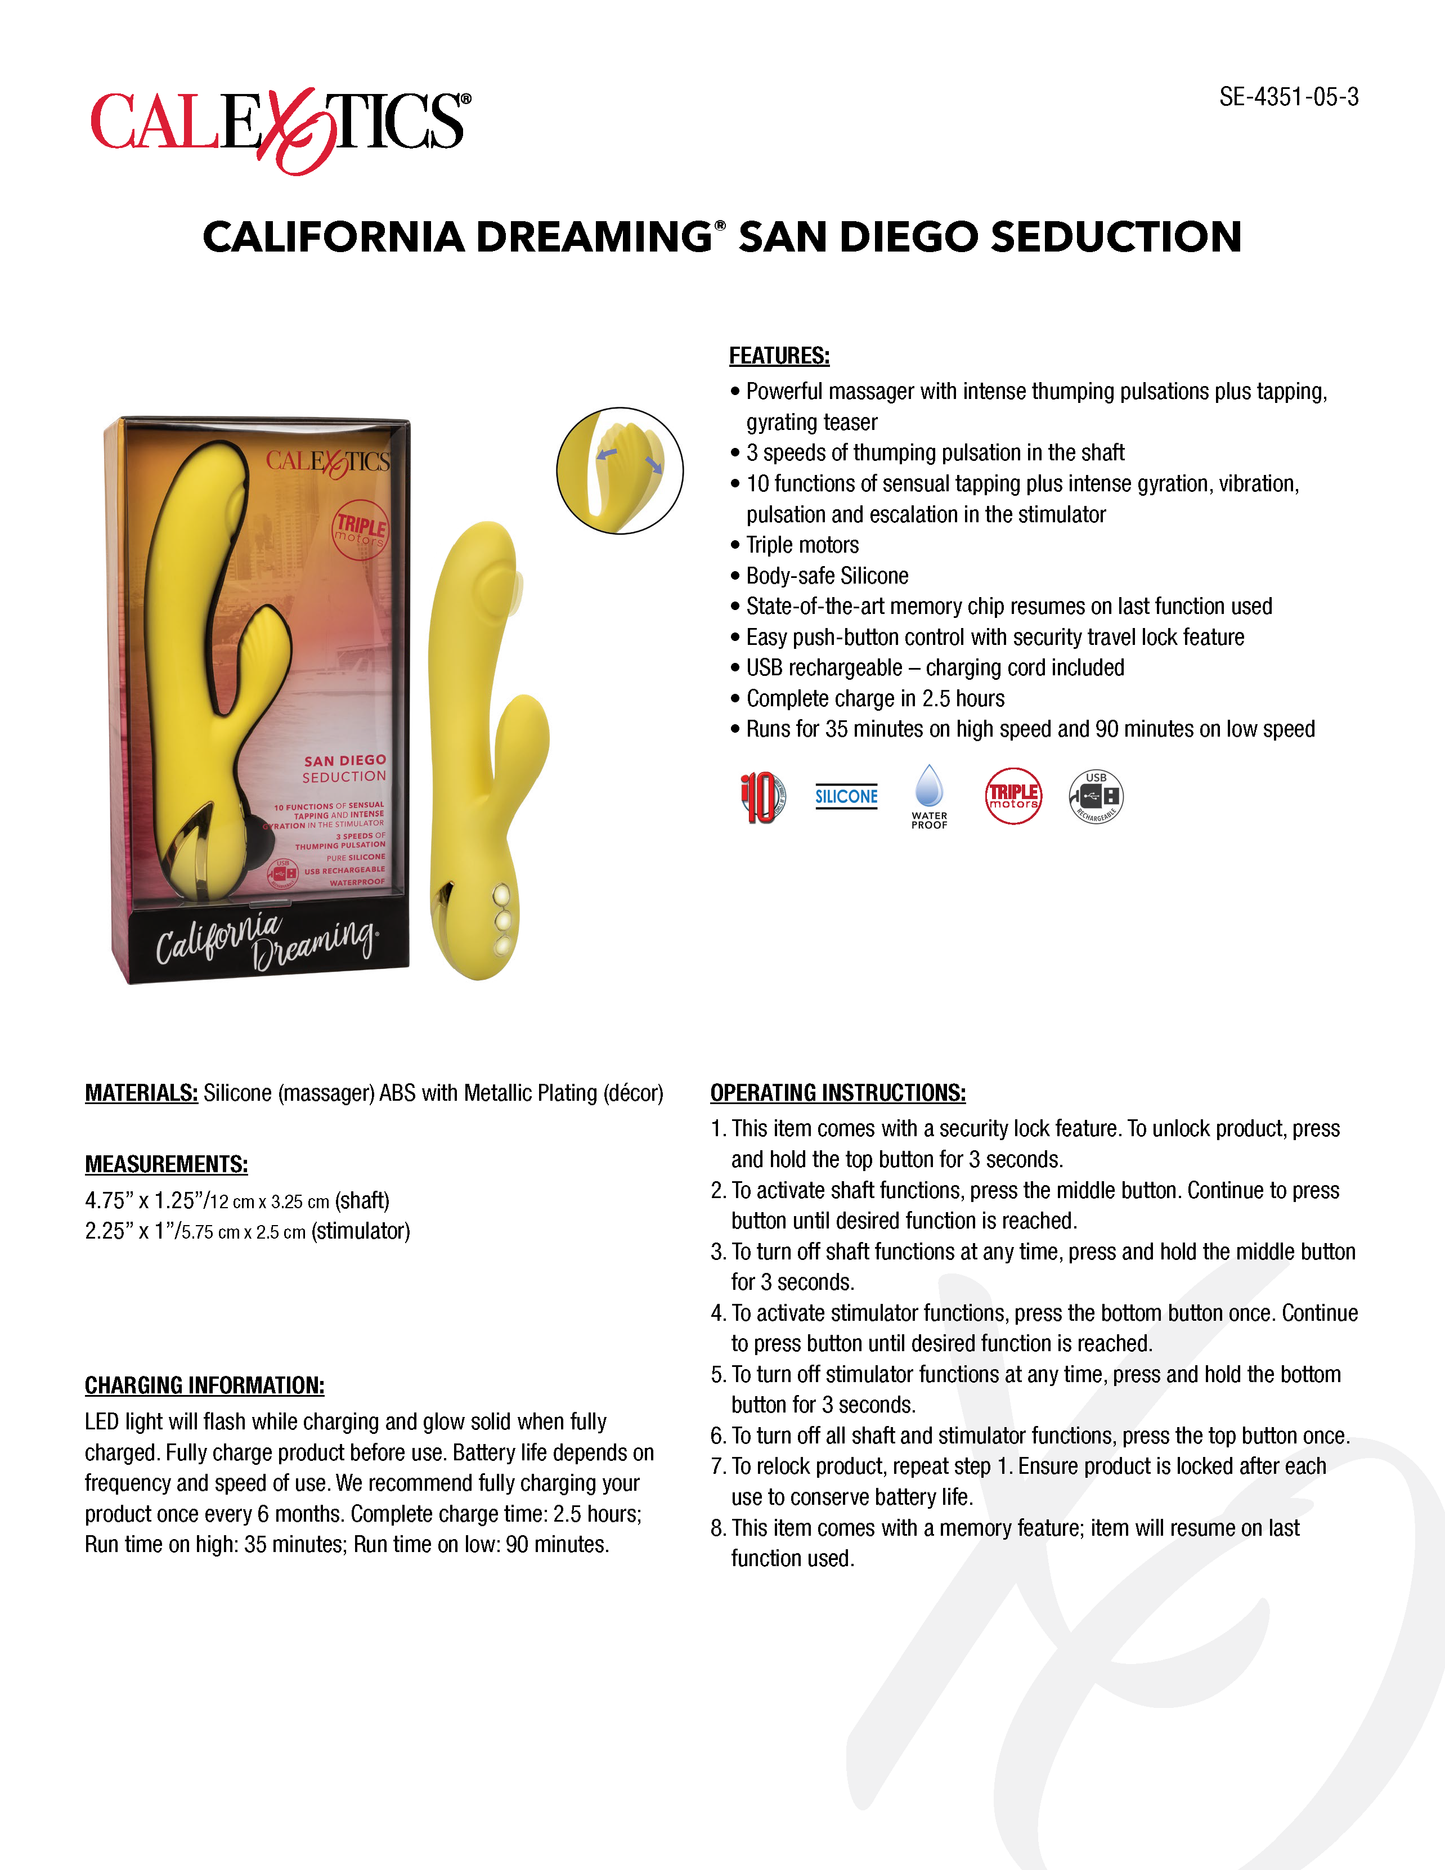 California Dreaming San Diego Seduction